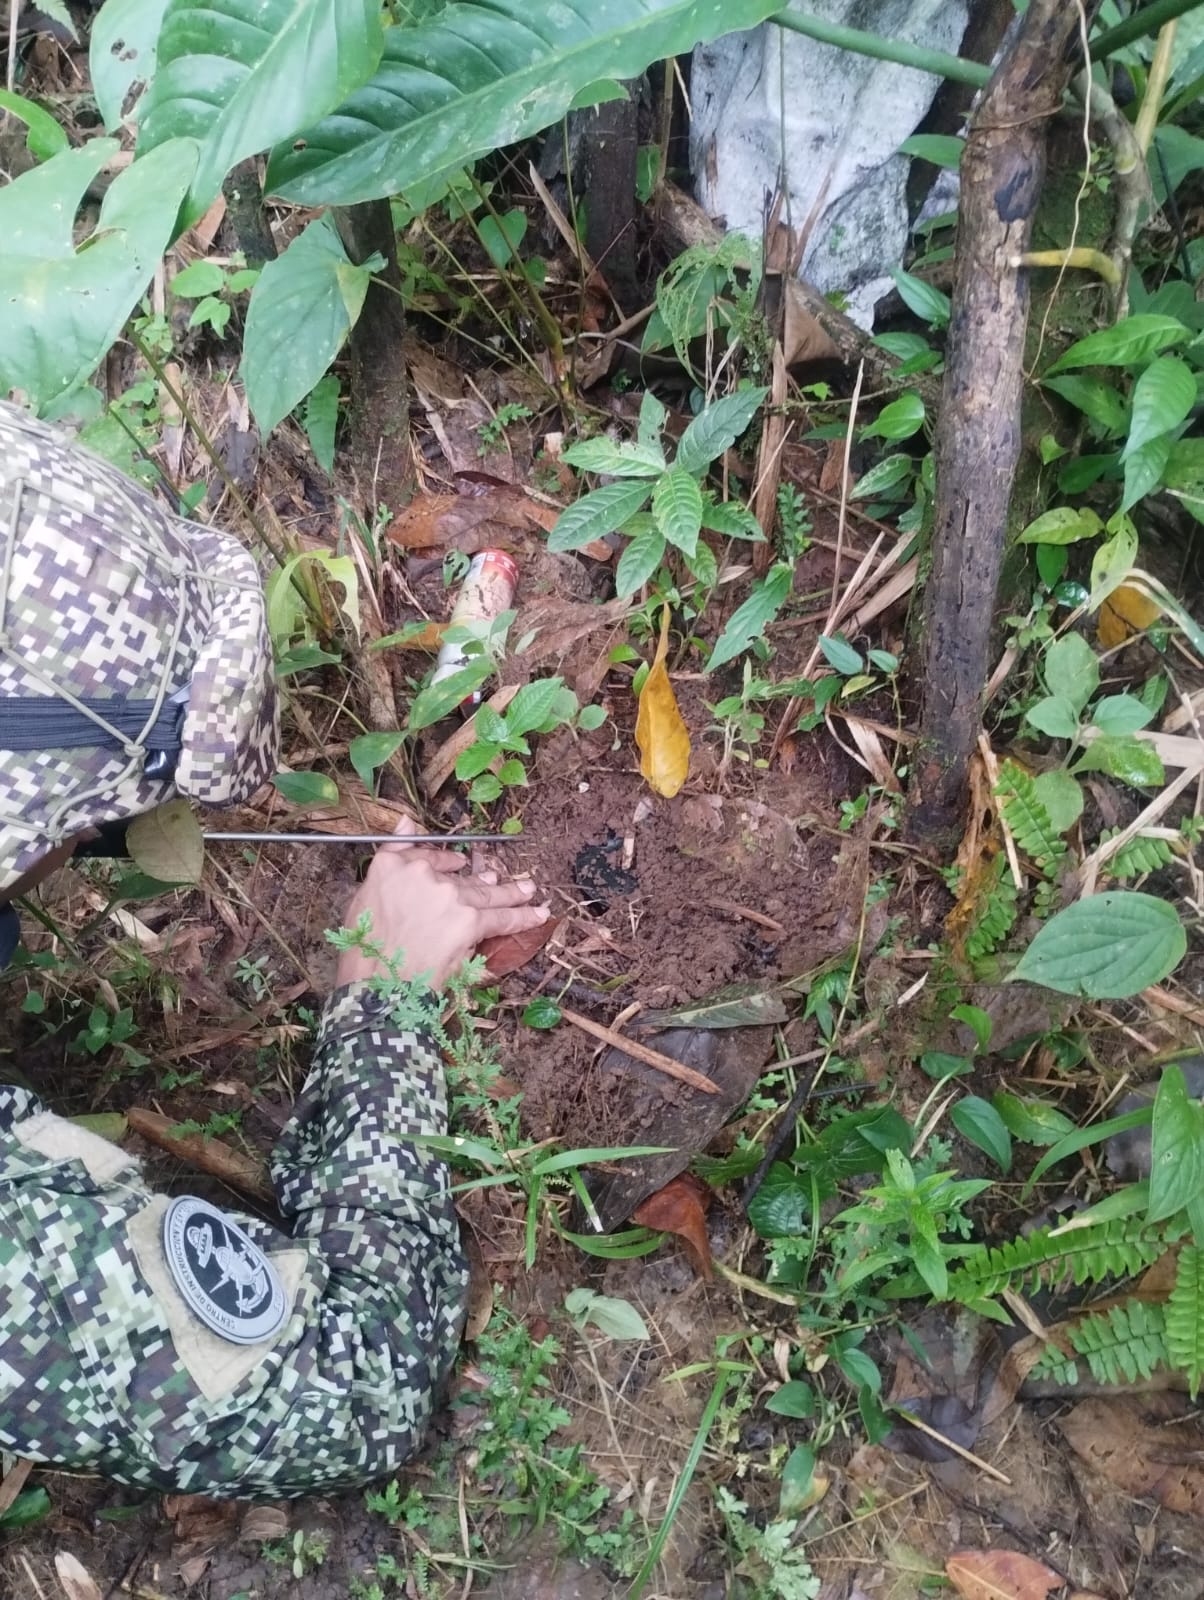 Autoridades destruyen 4 artefactos explosivos improvisados en el Bajo Calima, Buenaventura